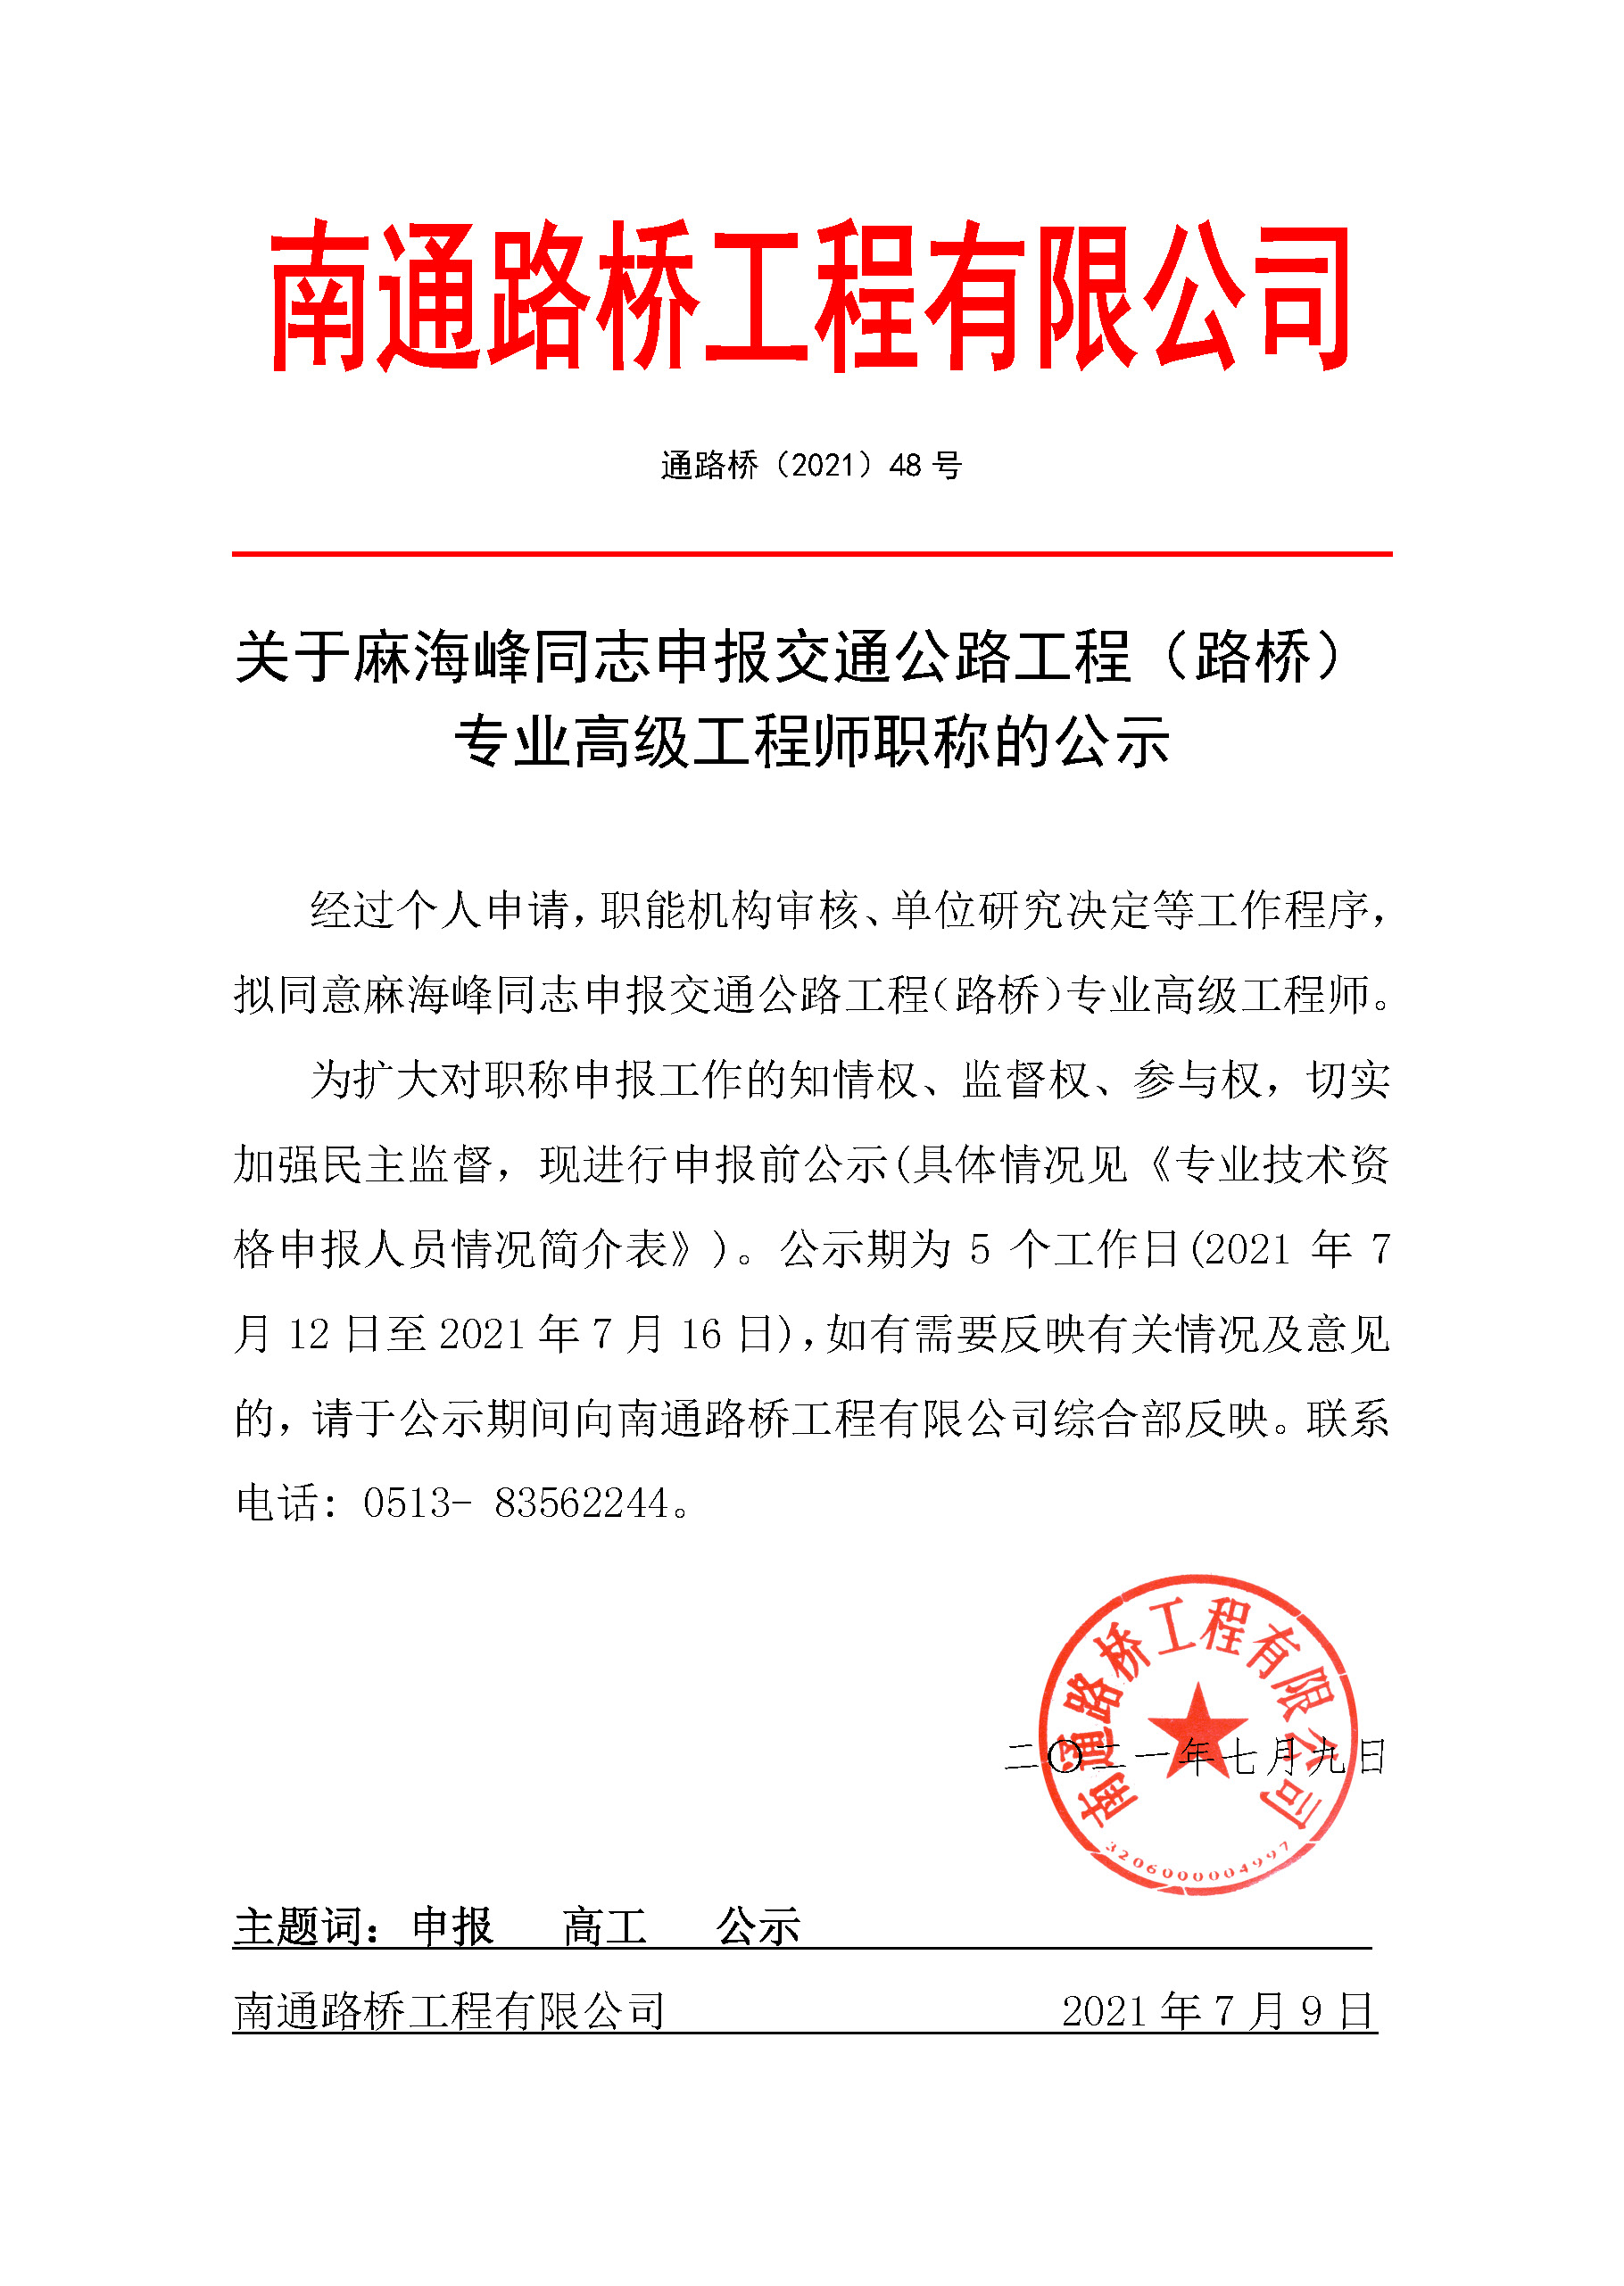 关于麻海峰同志申报交通公路工程（路桥） 专业高级工程师职称的公示 经